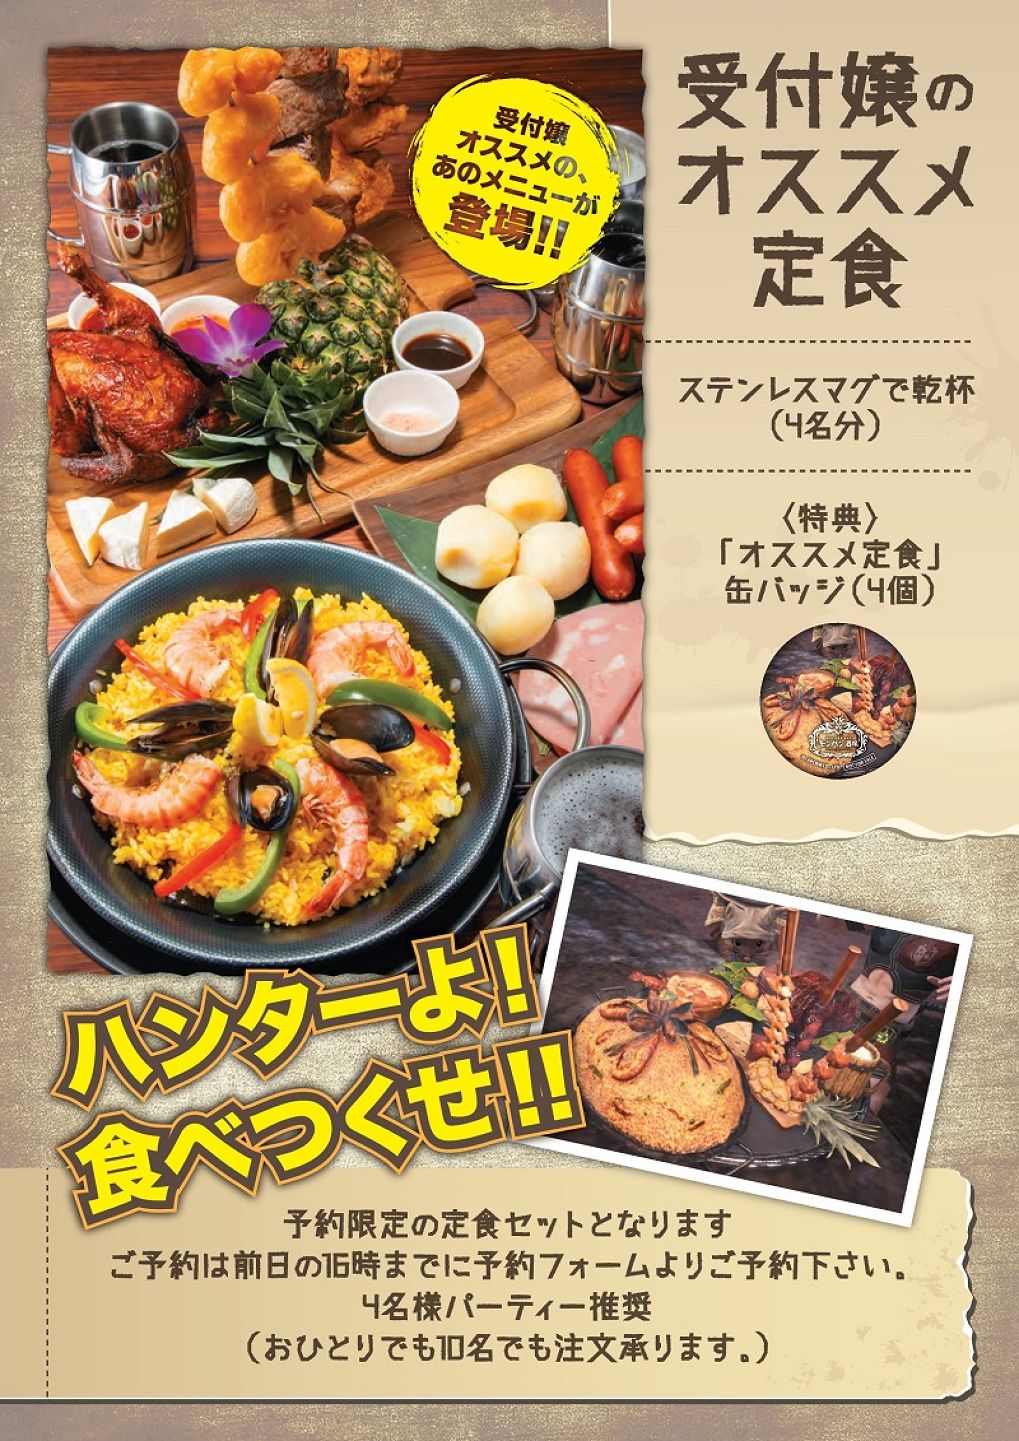 Capcom จับมือ Pasela Resorts จัดมื้ออาหารในเกม Monster Hunter World ให้กินกันได้จริงๆ ฟินกันไปข้างหนึ่ง!